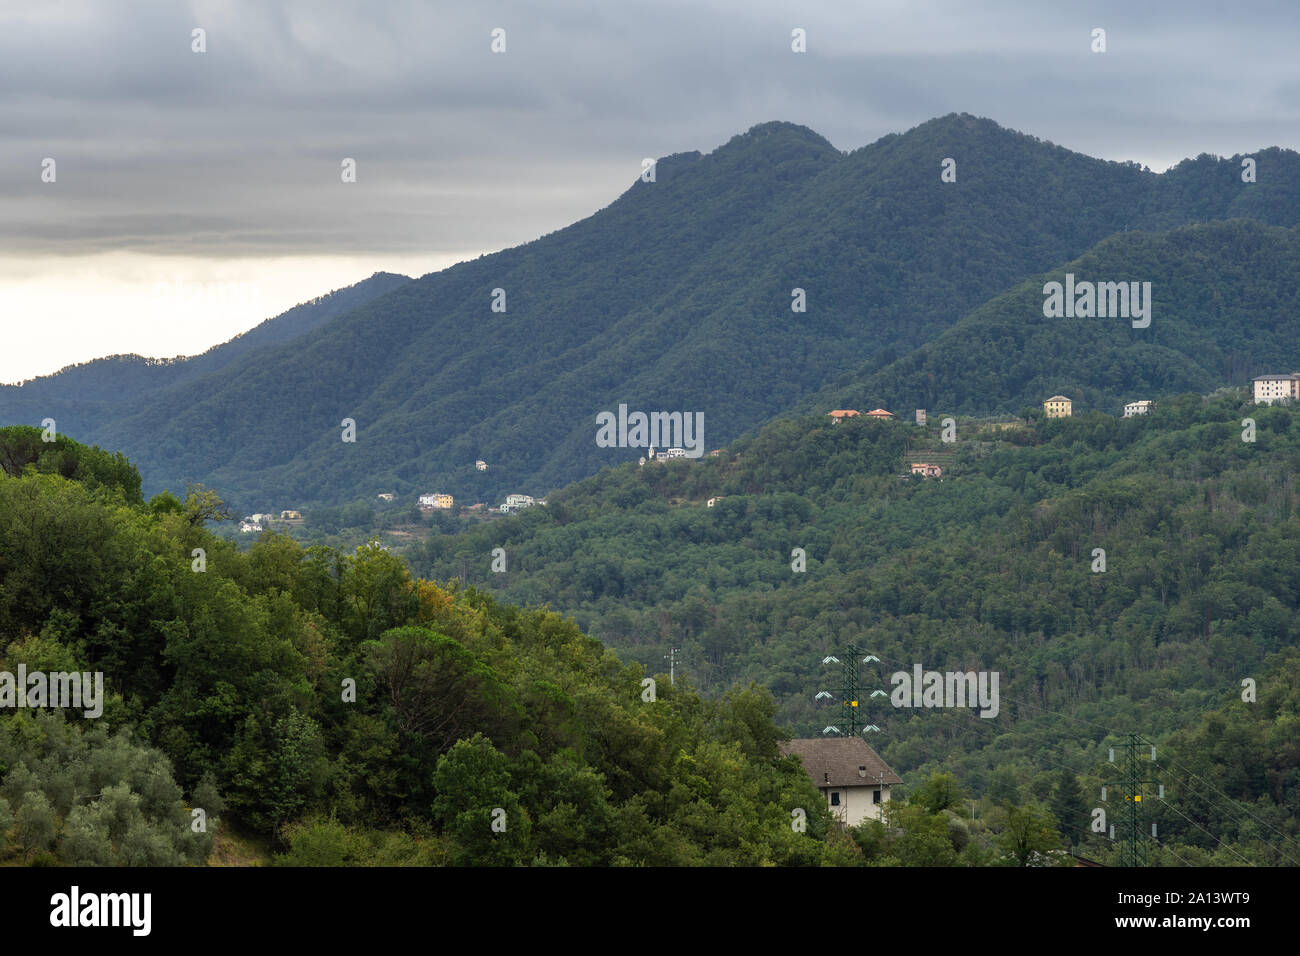 Landschaft der Apenninen mit grünen dichten Wald und Dörfer in Ligurien, Italien Stockfoto